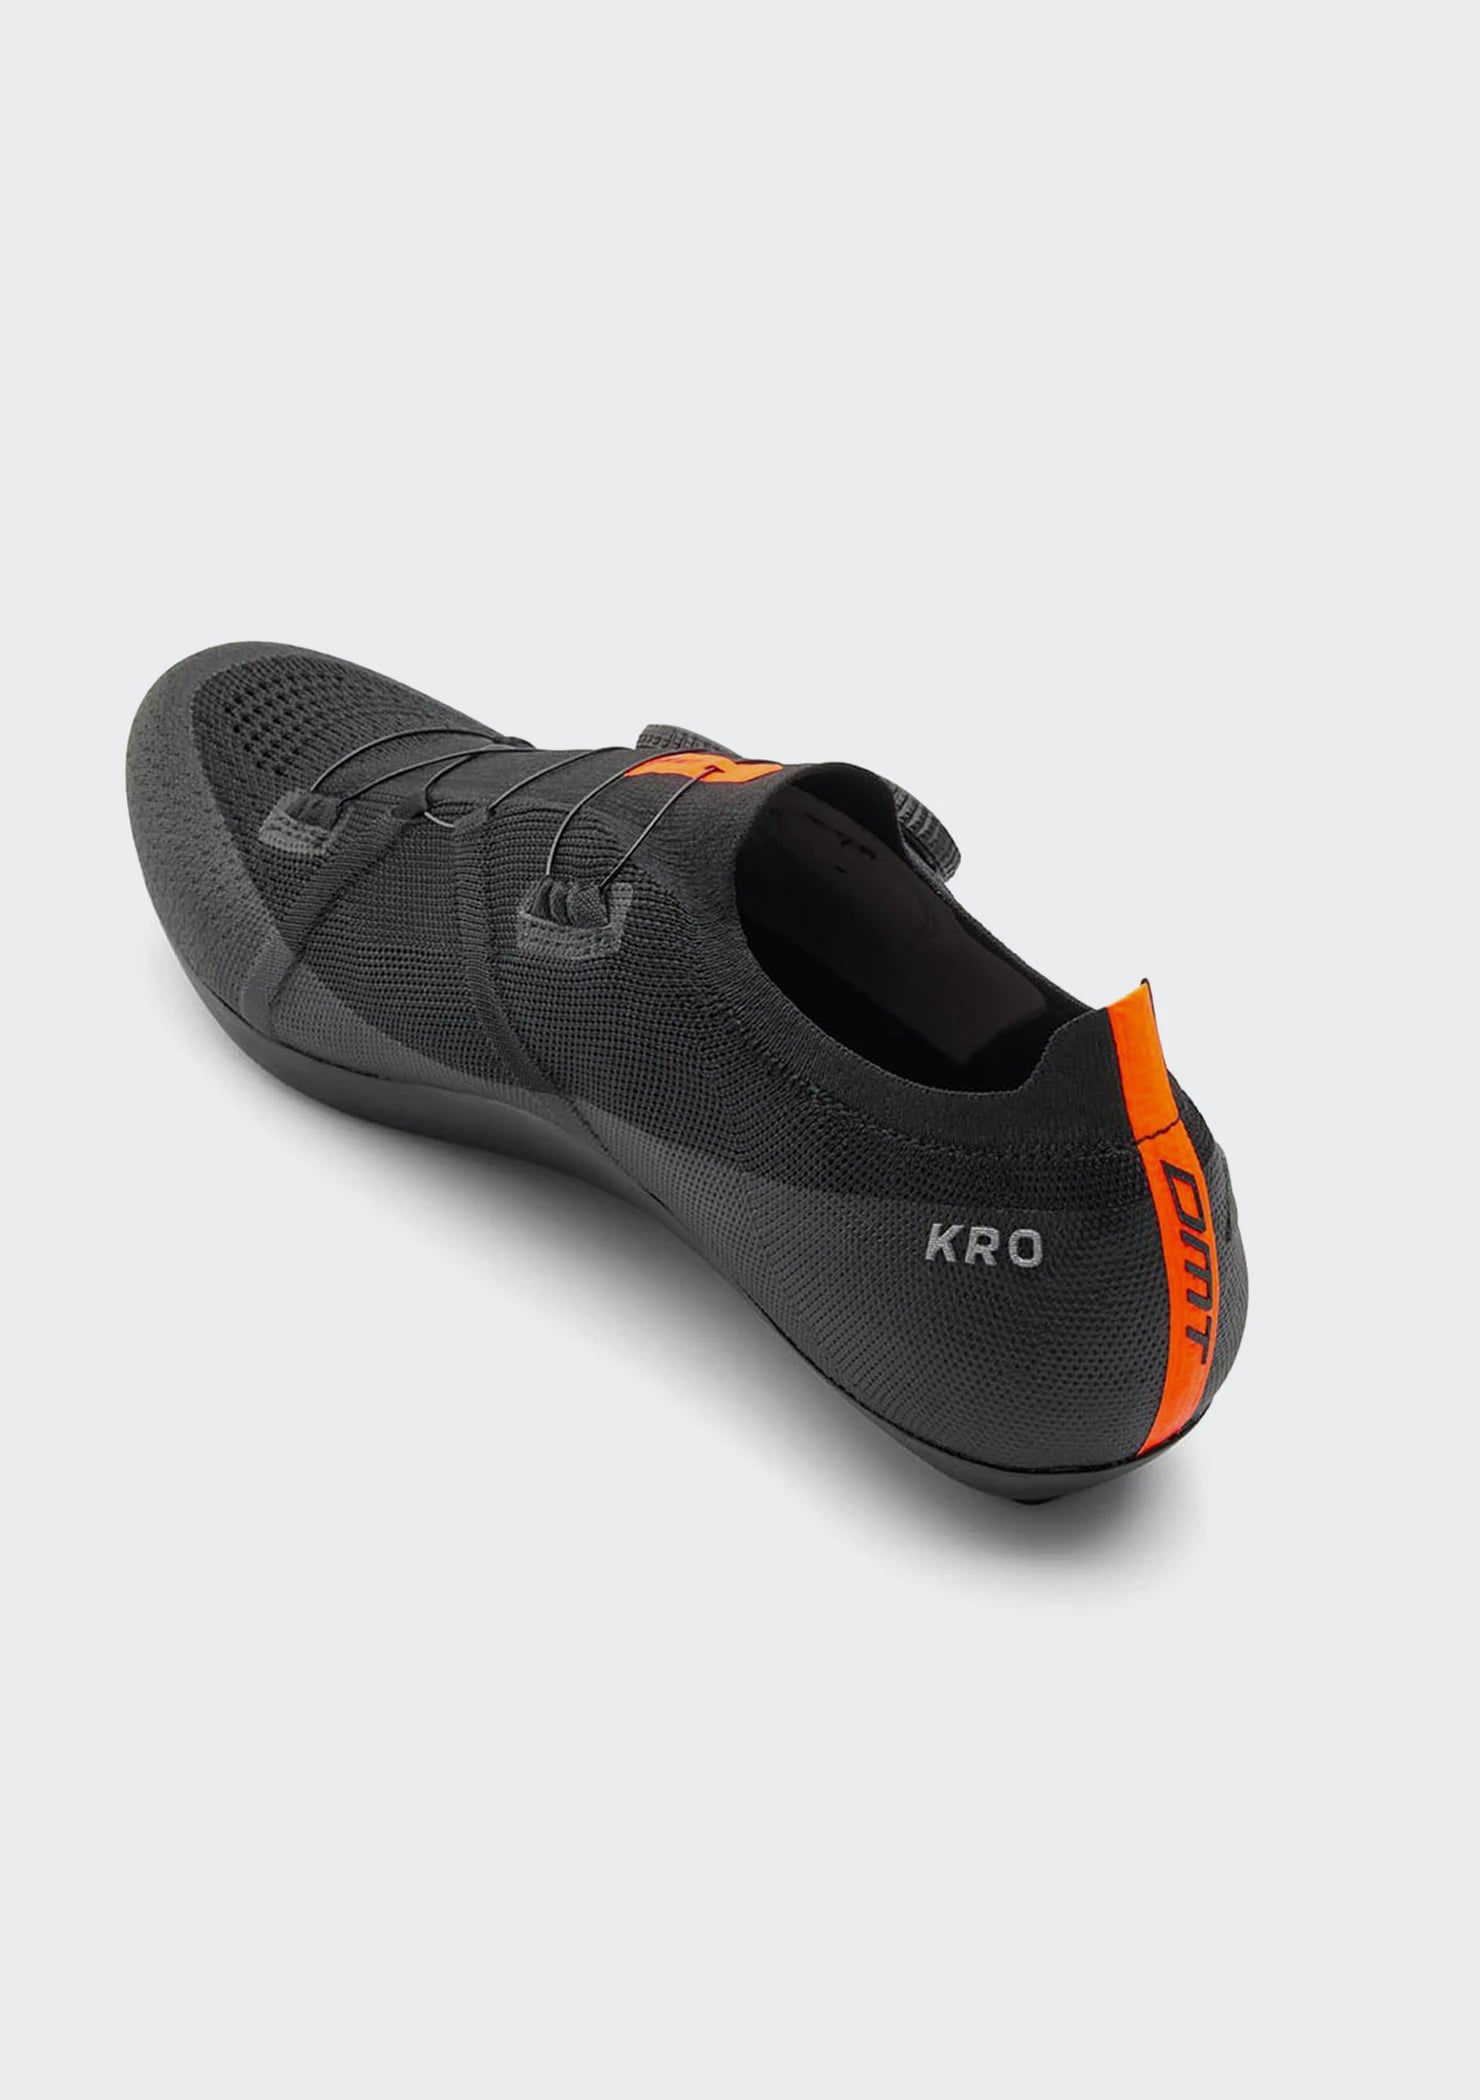 KR0 Road Shoe